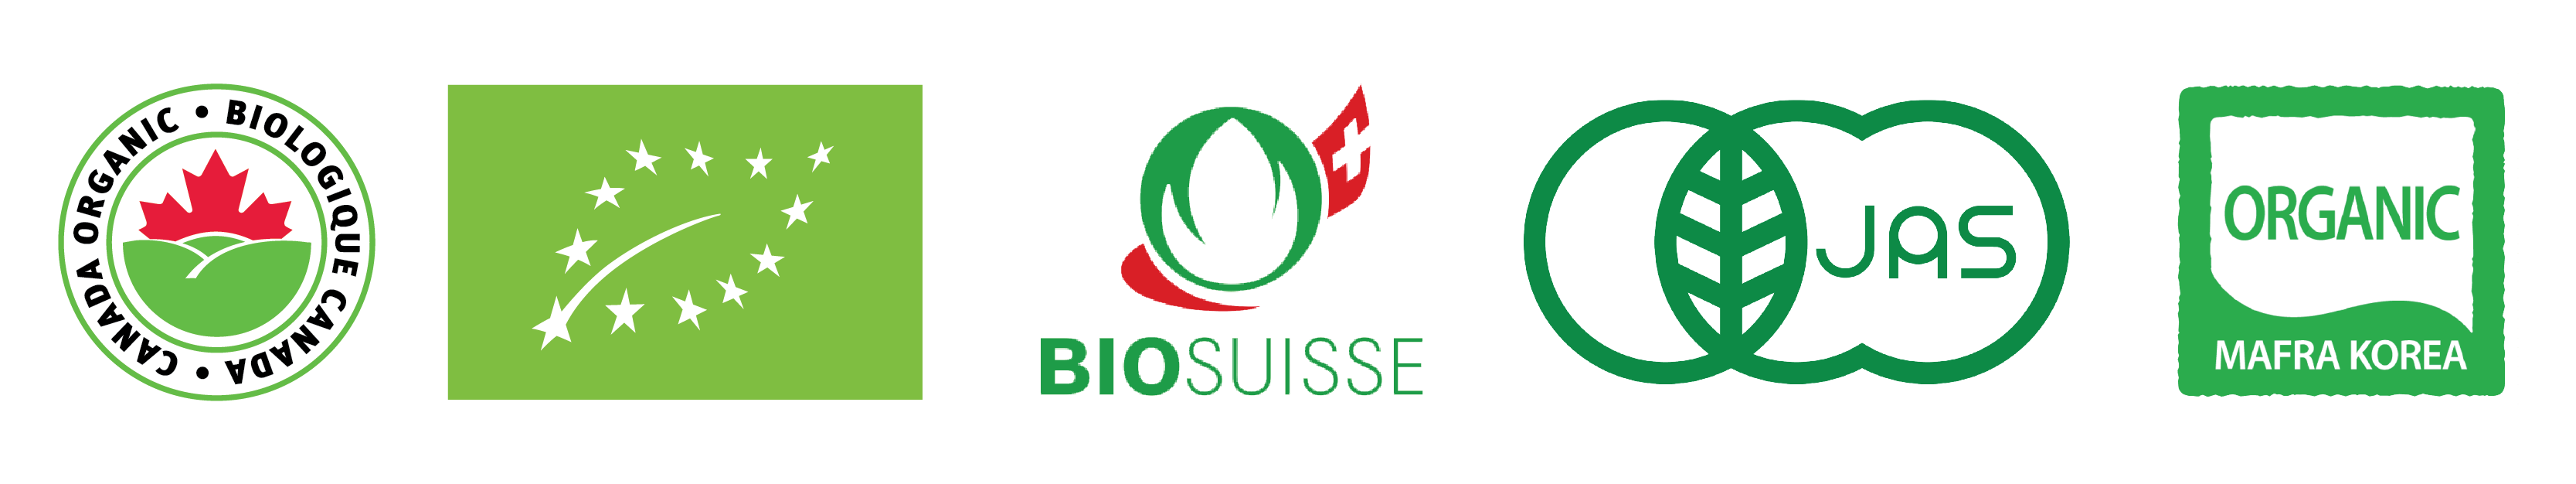 International Organic Logos